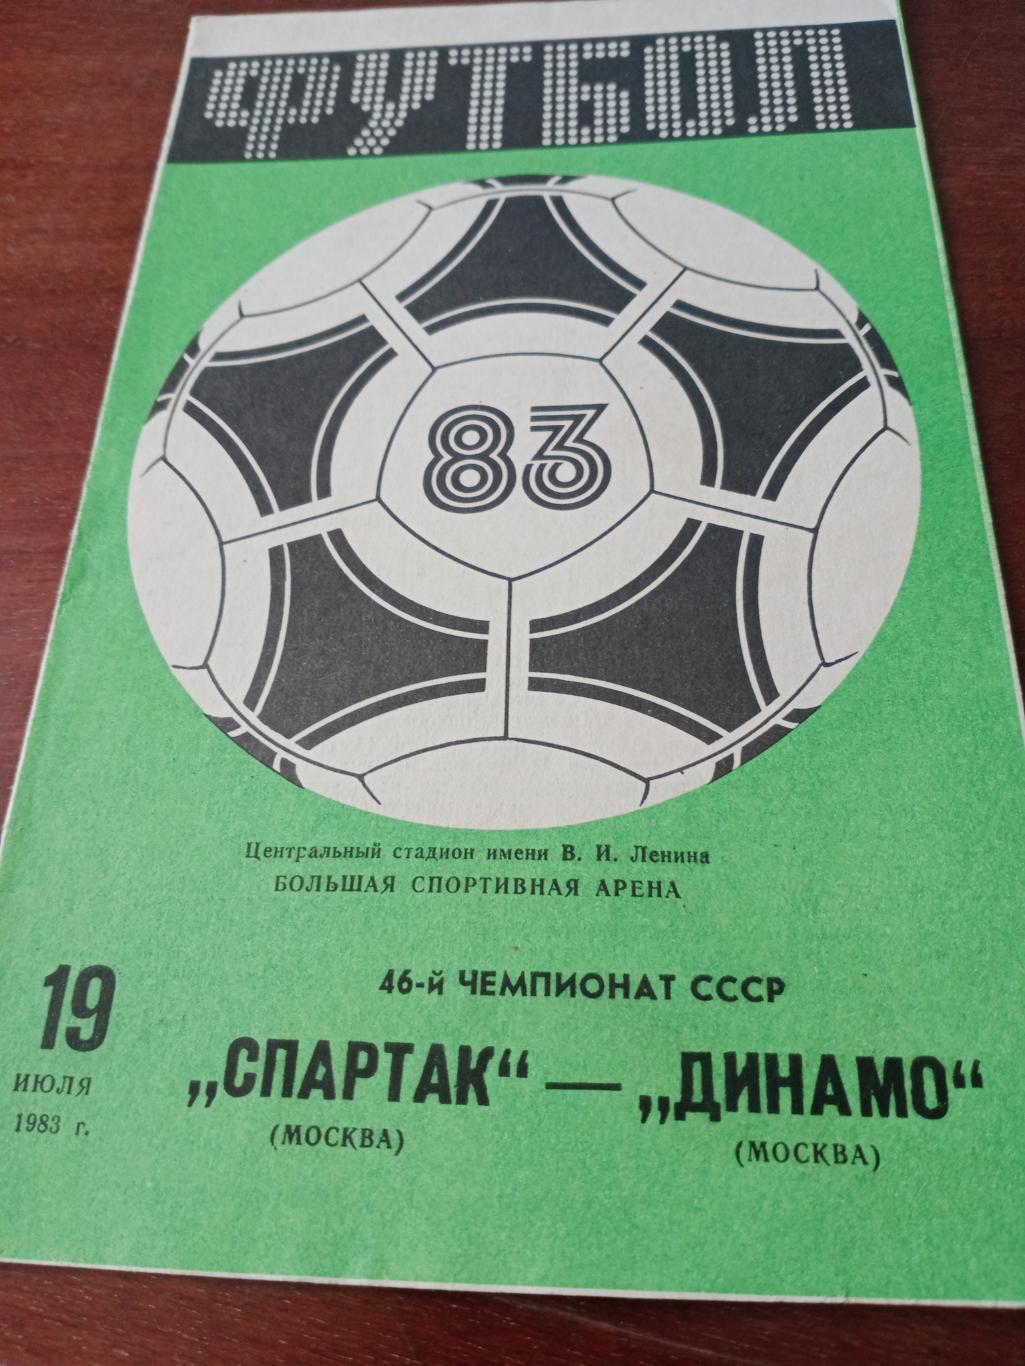 Спартак Москва - Динамо Москва. 19 июля 1983 год